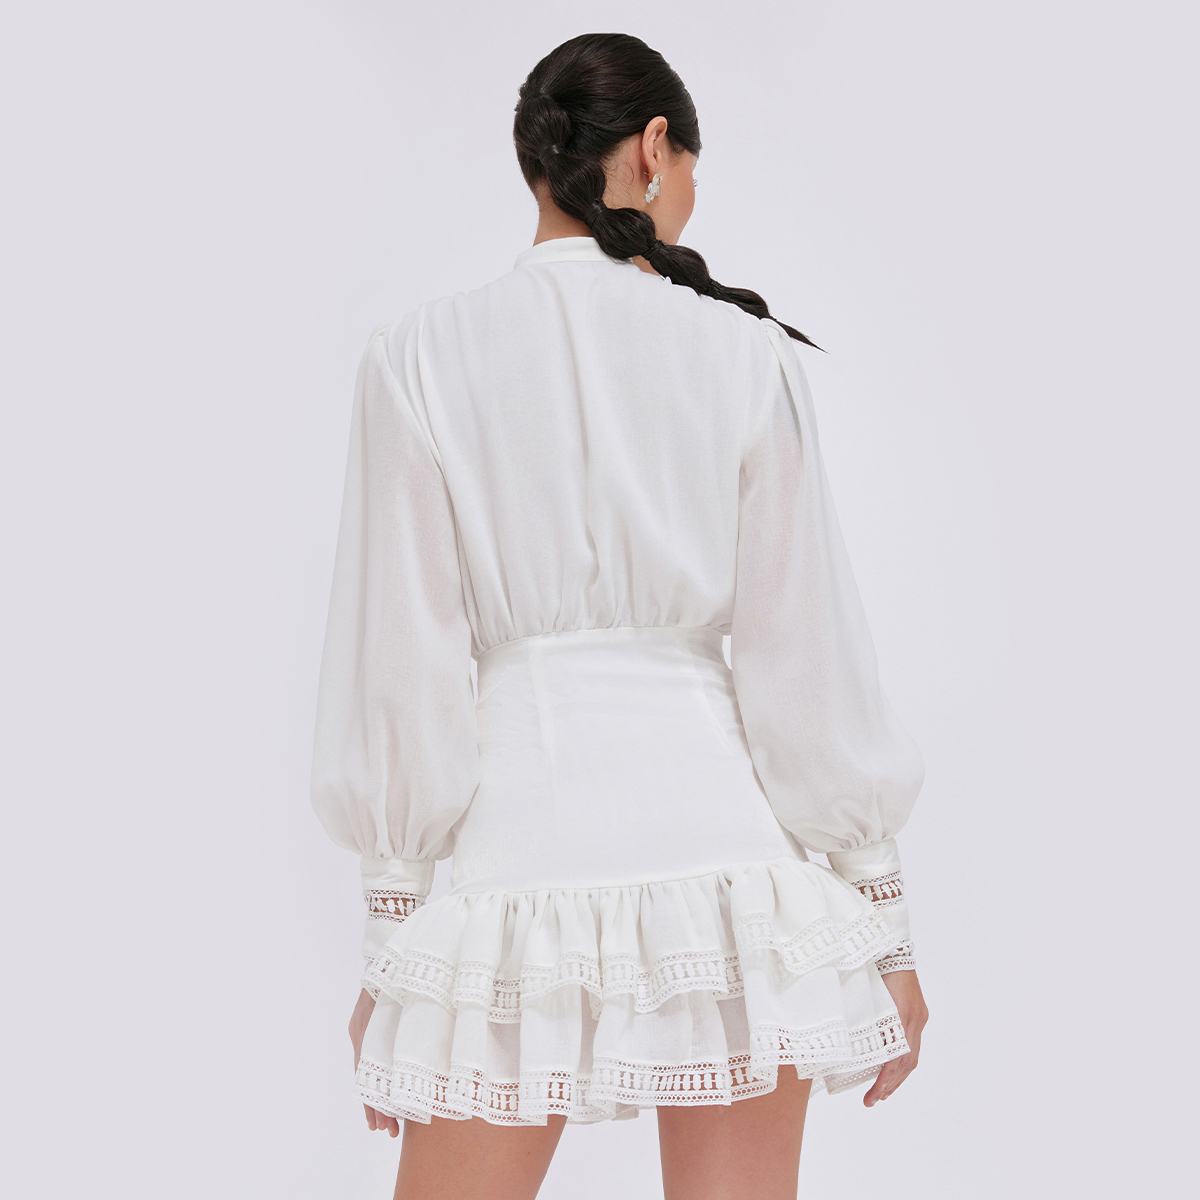 DEAR JOSÉ - Đầm ngắn kiểu nữ tay dài phối ren Misty vải linen trắng